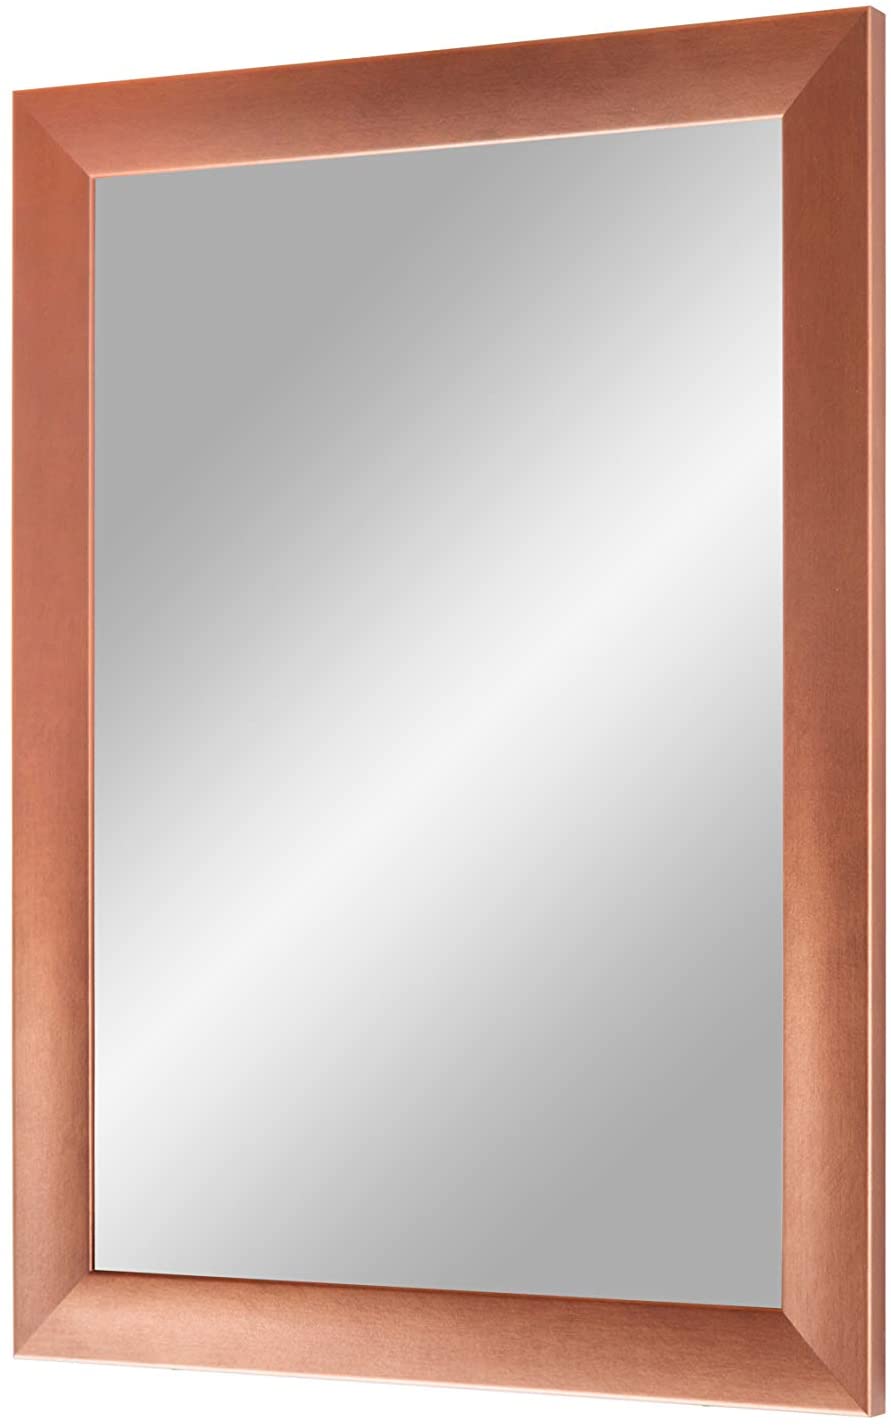 EXCLUSIV Wandspiegel nach Maß (Kupfer-Braun), Maßgefertigter Spiegelrahmen inkl. Spiegel und stabiler Rückwand mit Aufhängern